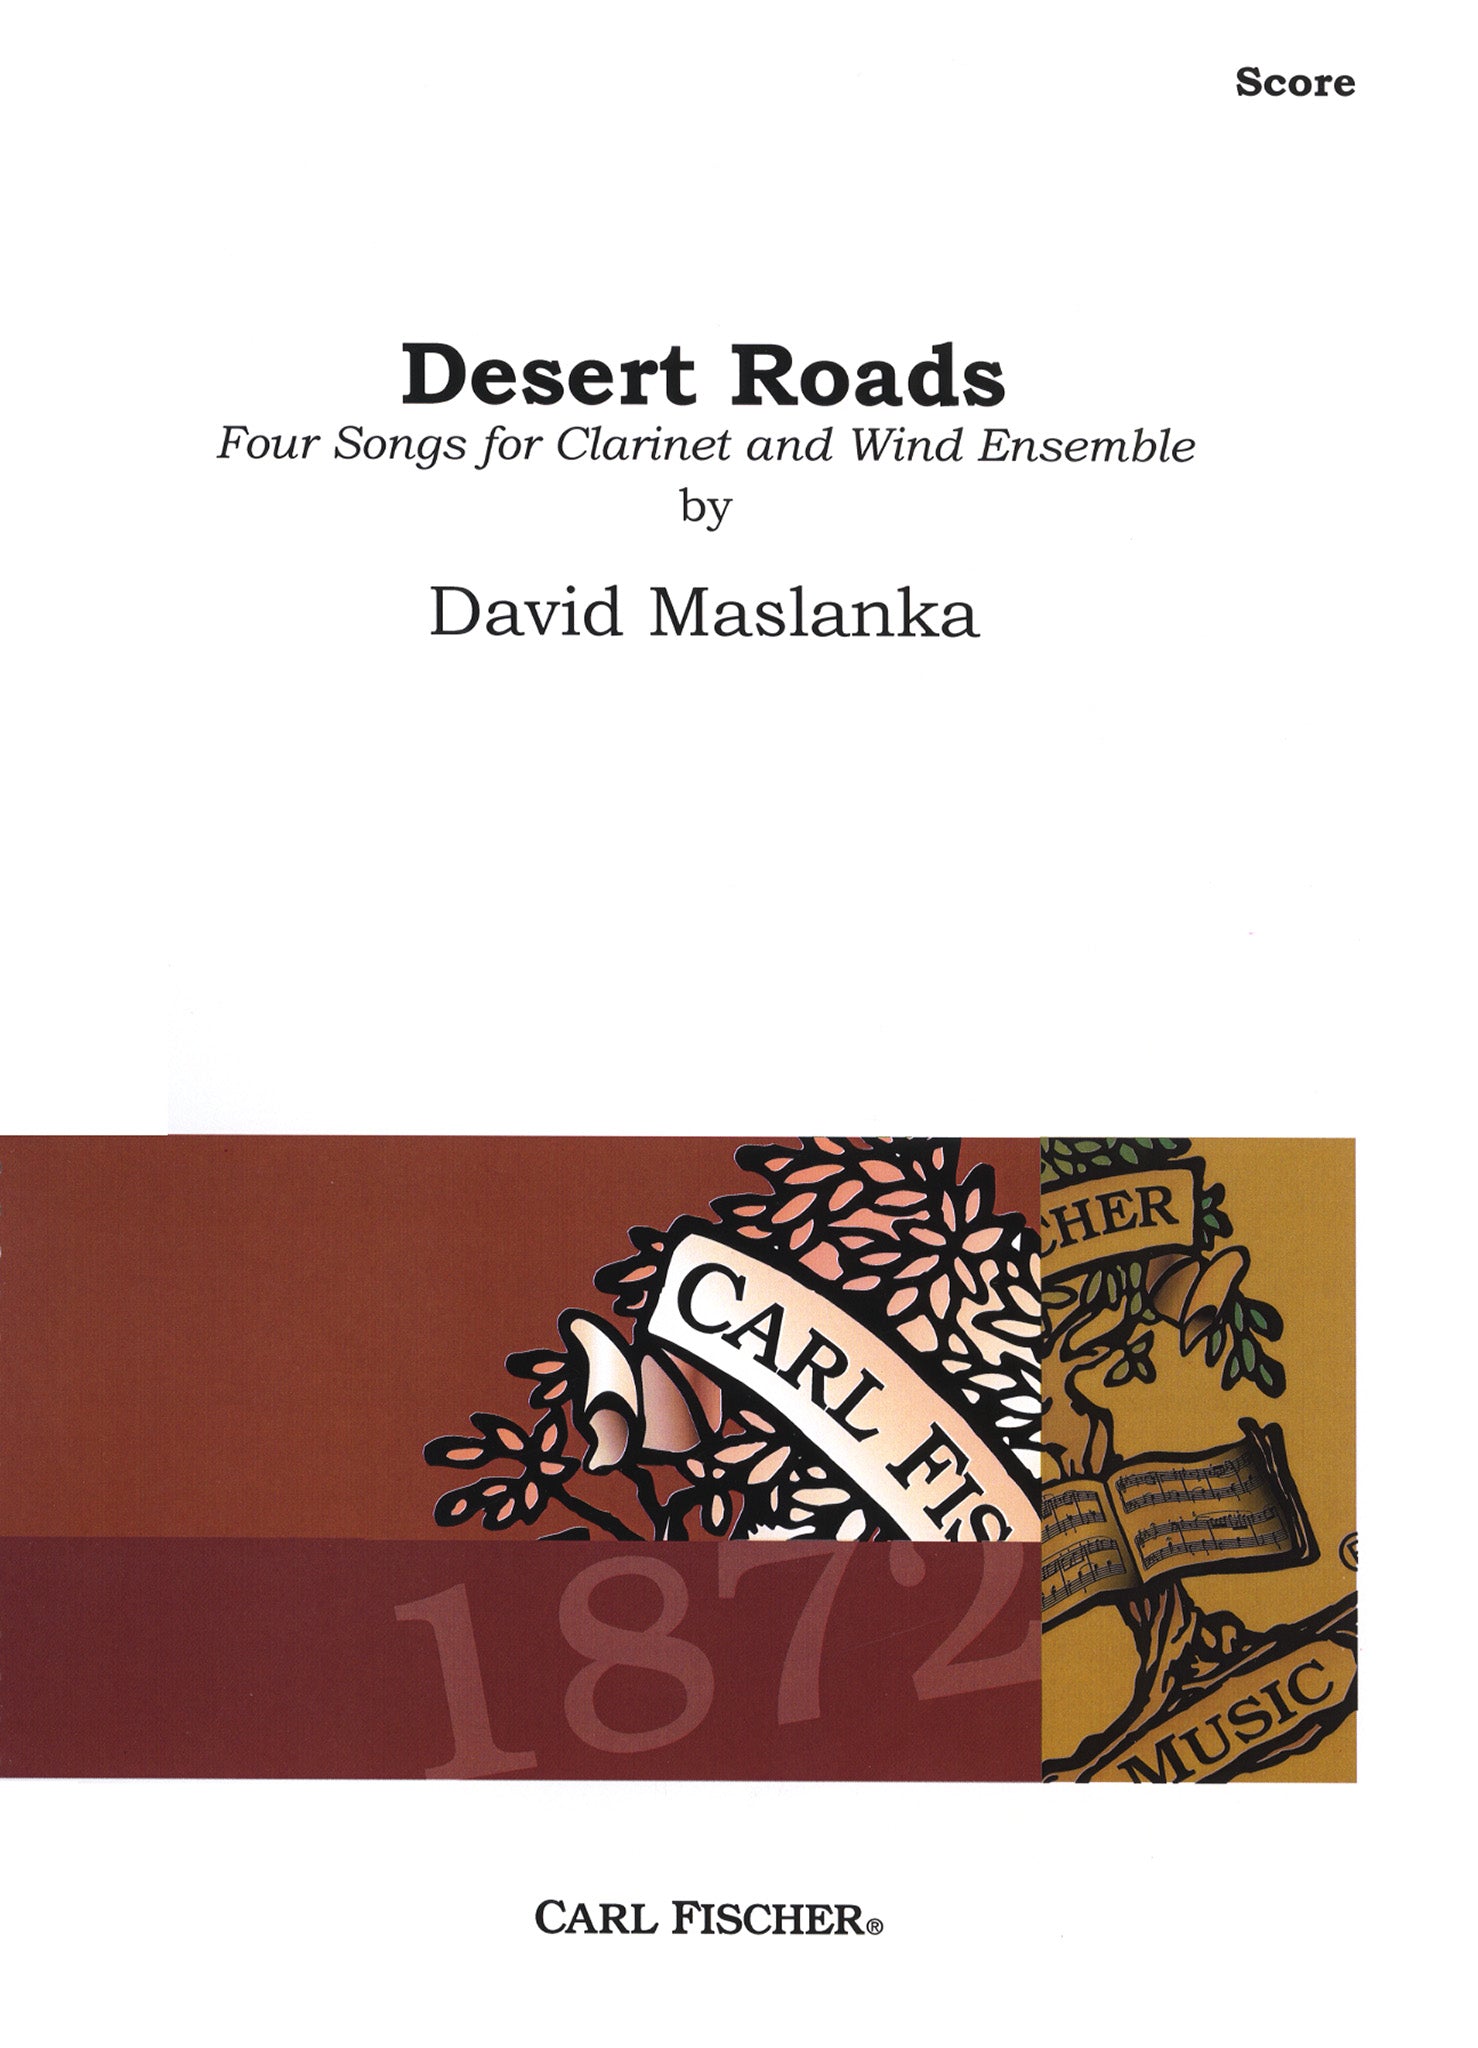 Desert Roads (piano score) Cover